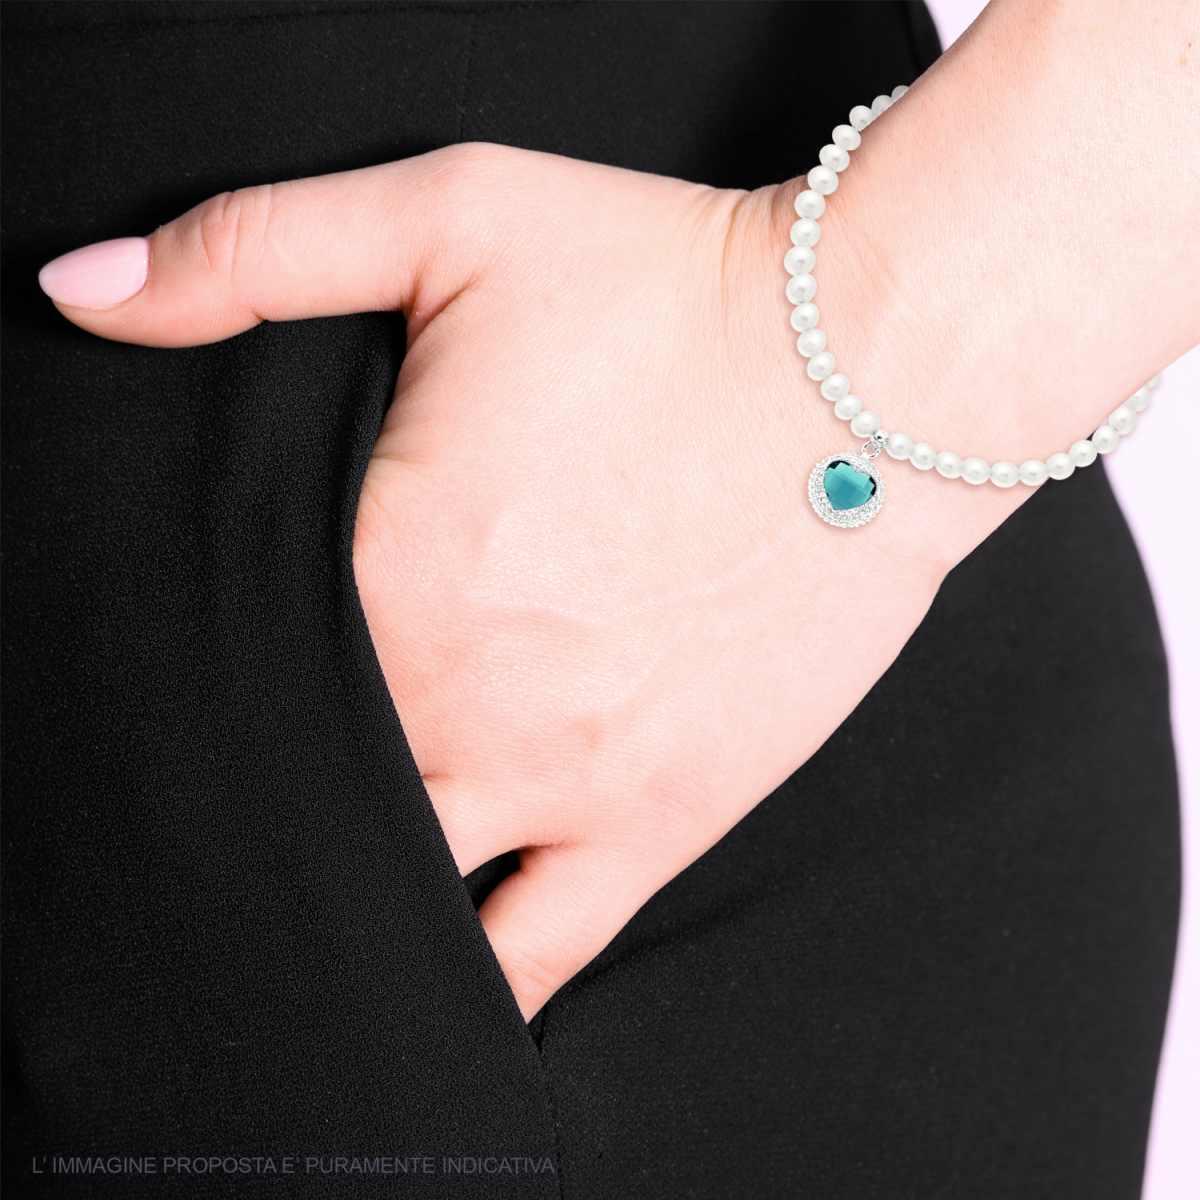 Bracciale Perle con Tondo Cuore Crystal Verde Smeraldo e Cubic Zirconia Bianchi in ACCIAIO